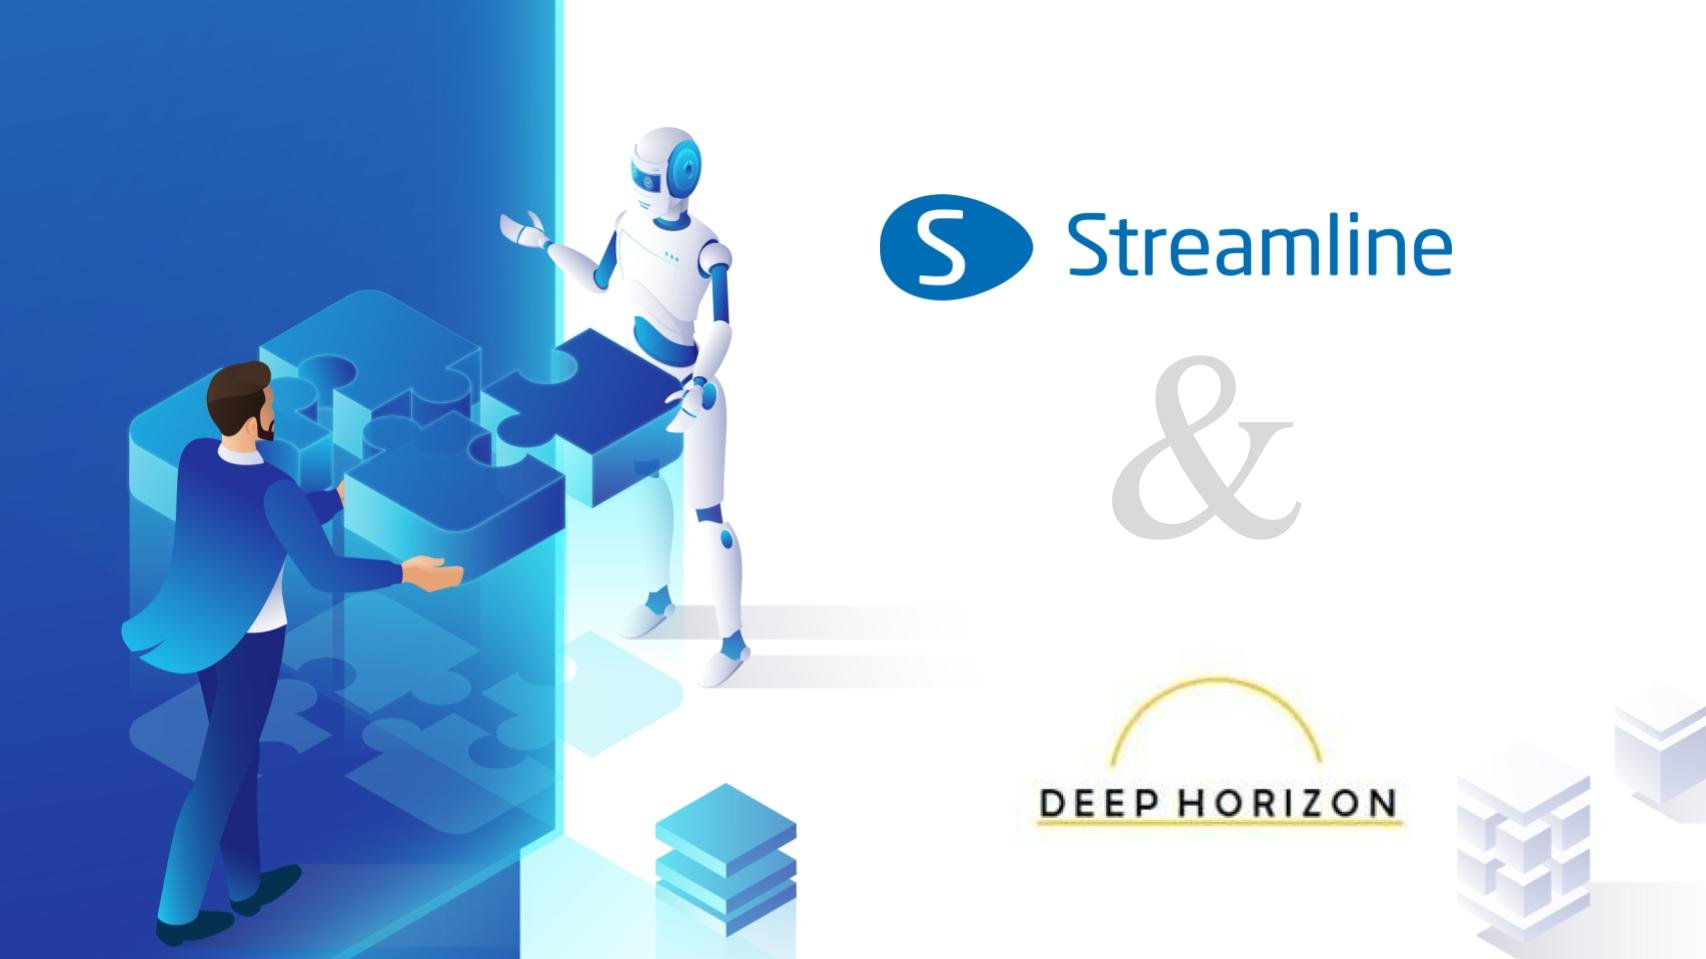 GMDH Streamline משתפת פעולה עם Deep Horizon Solutions כדי להעצים את החוסן של שרשרת האספקה